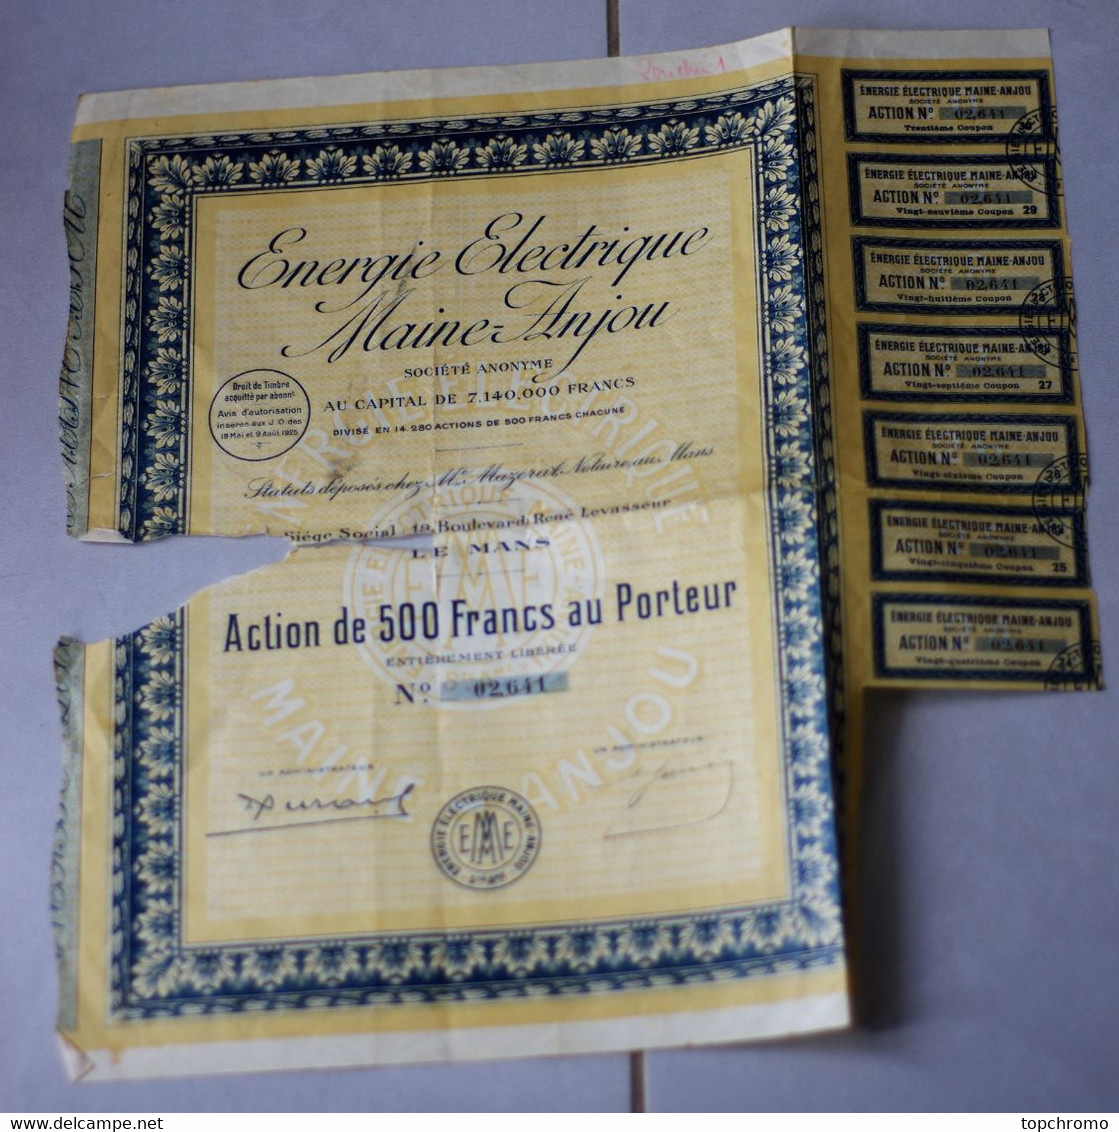 Action De 500 Francs Au Porteur Energie Electrique Maine-Anjou Le Mans 7 Coupons 1925 (manque Visible) - Electricité & Gaz